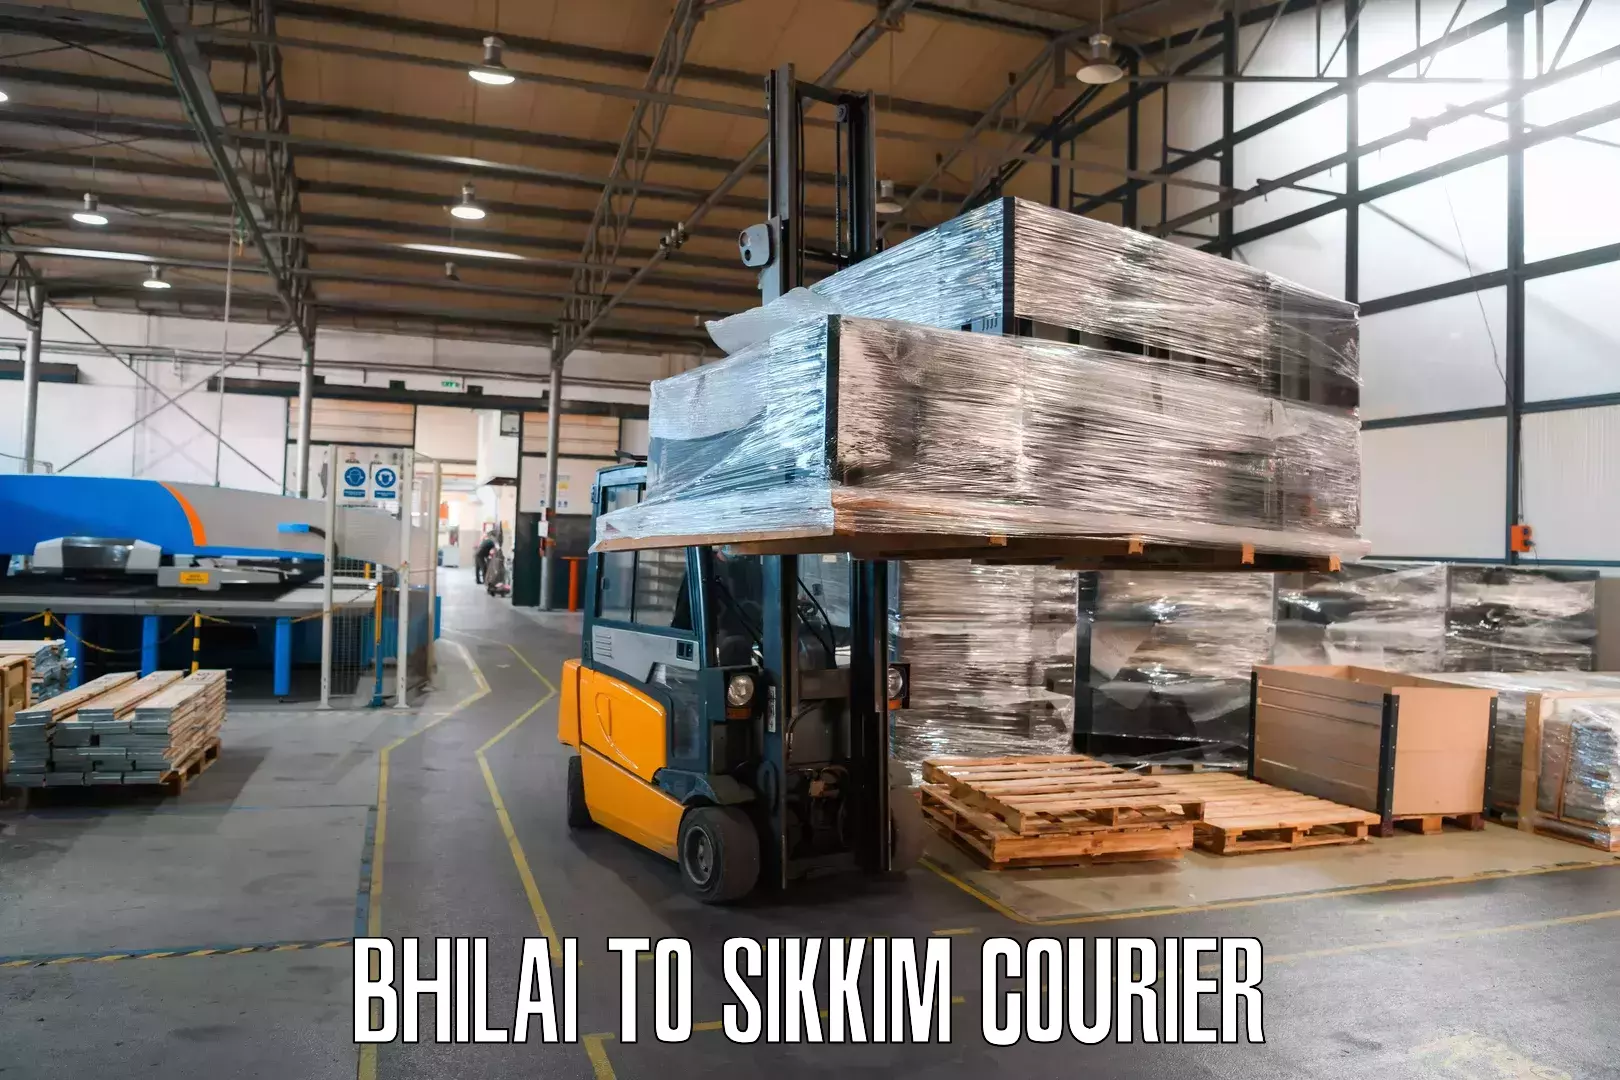 Courier service comparison Bhilai to Jorethang